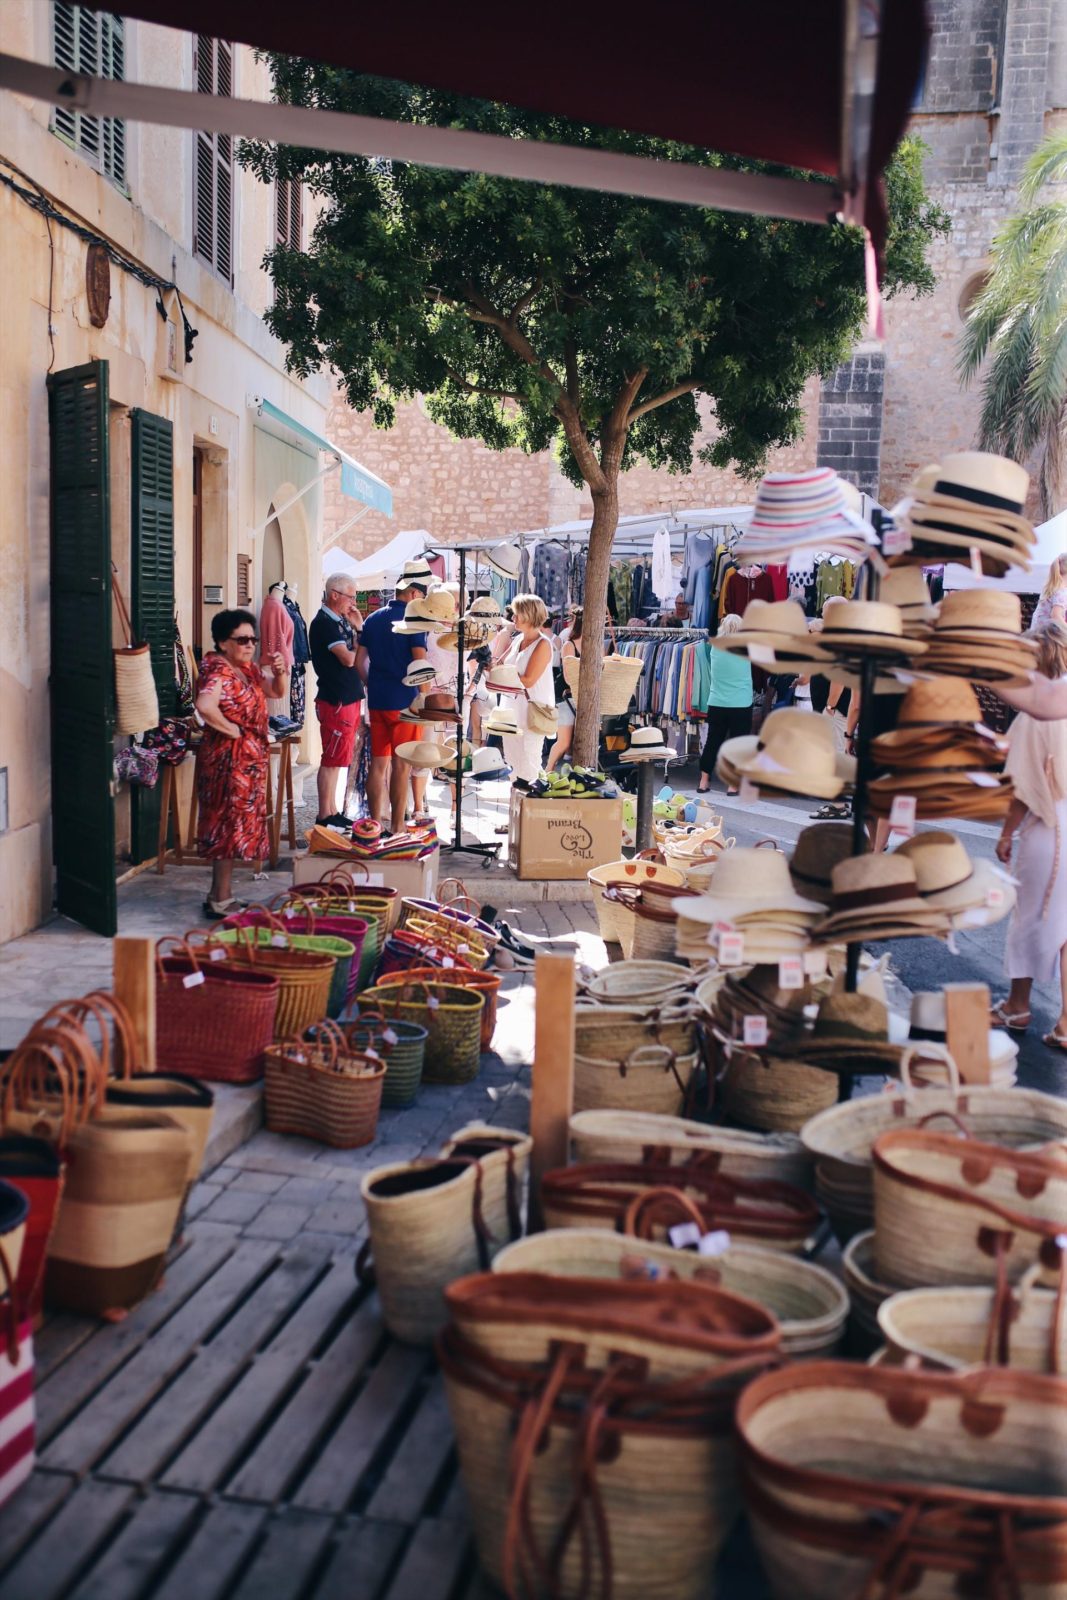 Die schönsten Wochenmärkte auf Mallorca Teil 2 #Mallorca #MallorcamitKindern #Märkteaufmallorca #Fincallorca #Reisenmitkindern #Malle #Mallorcatips | Pinspiration.de